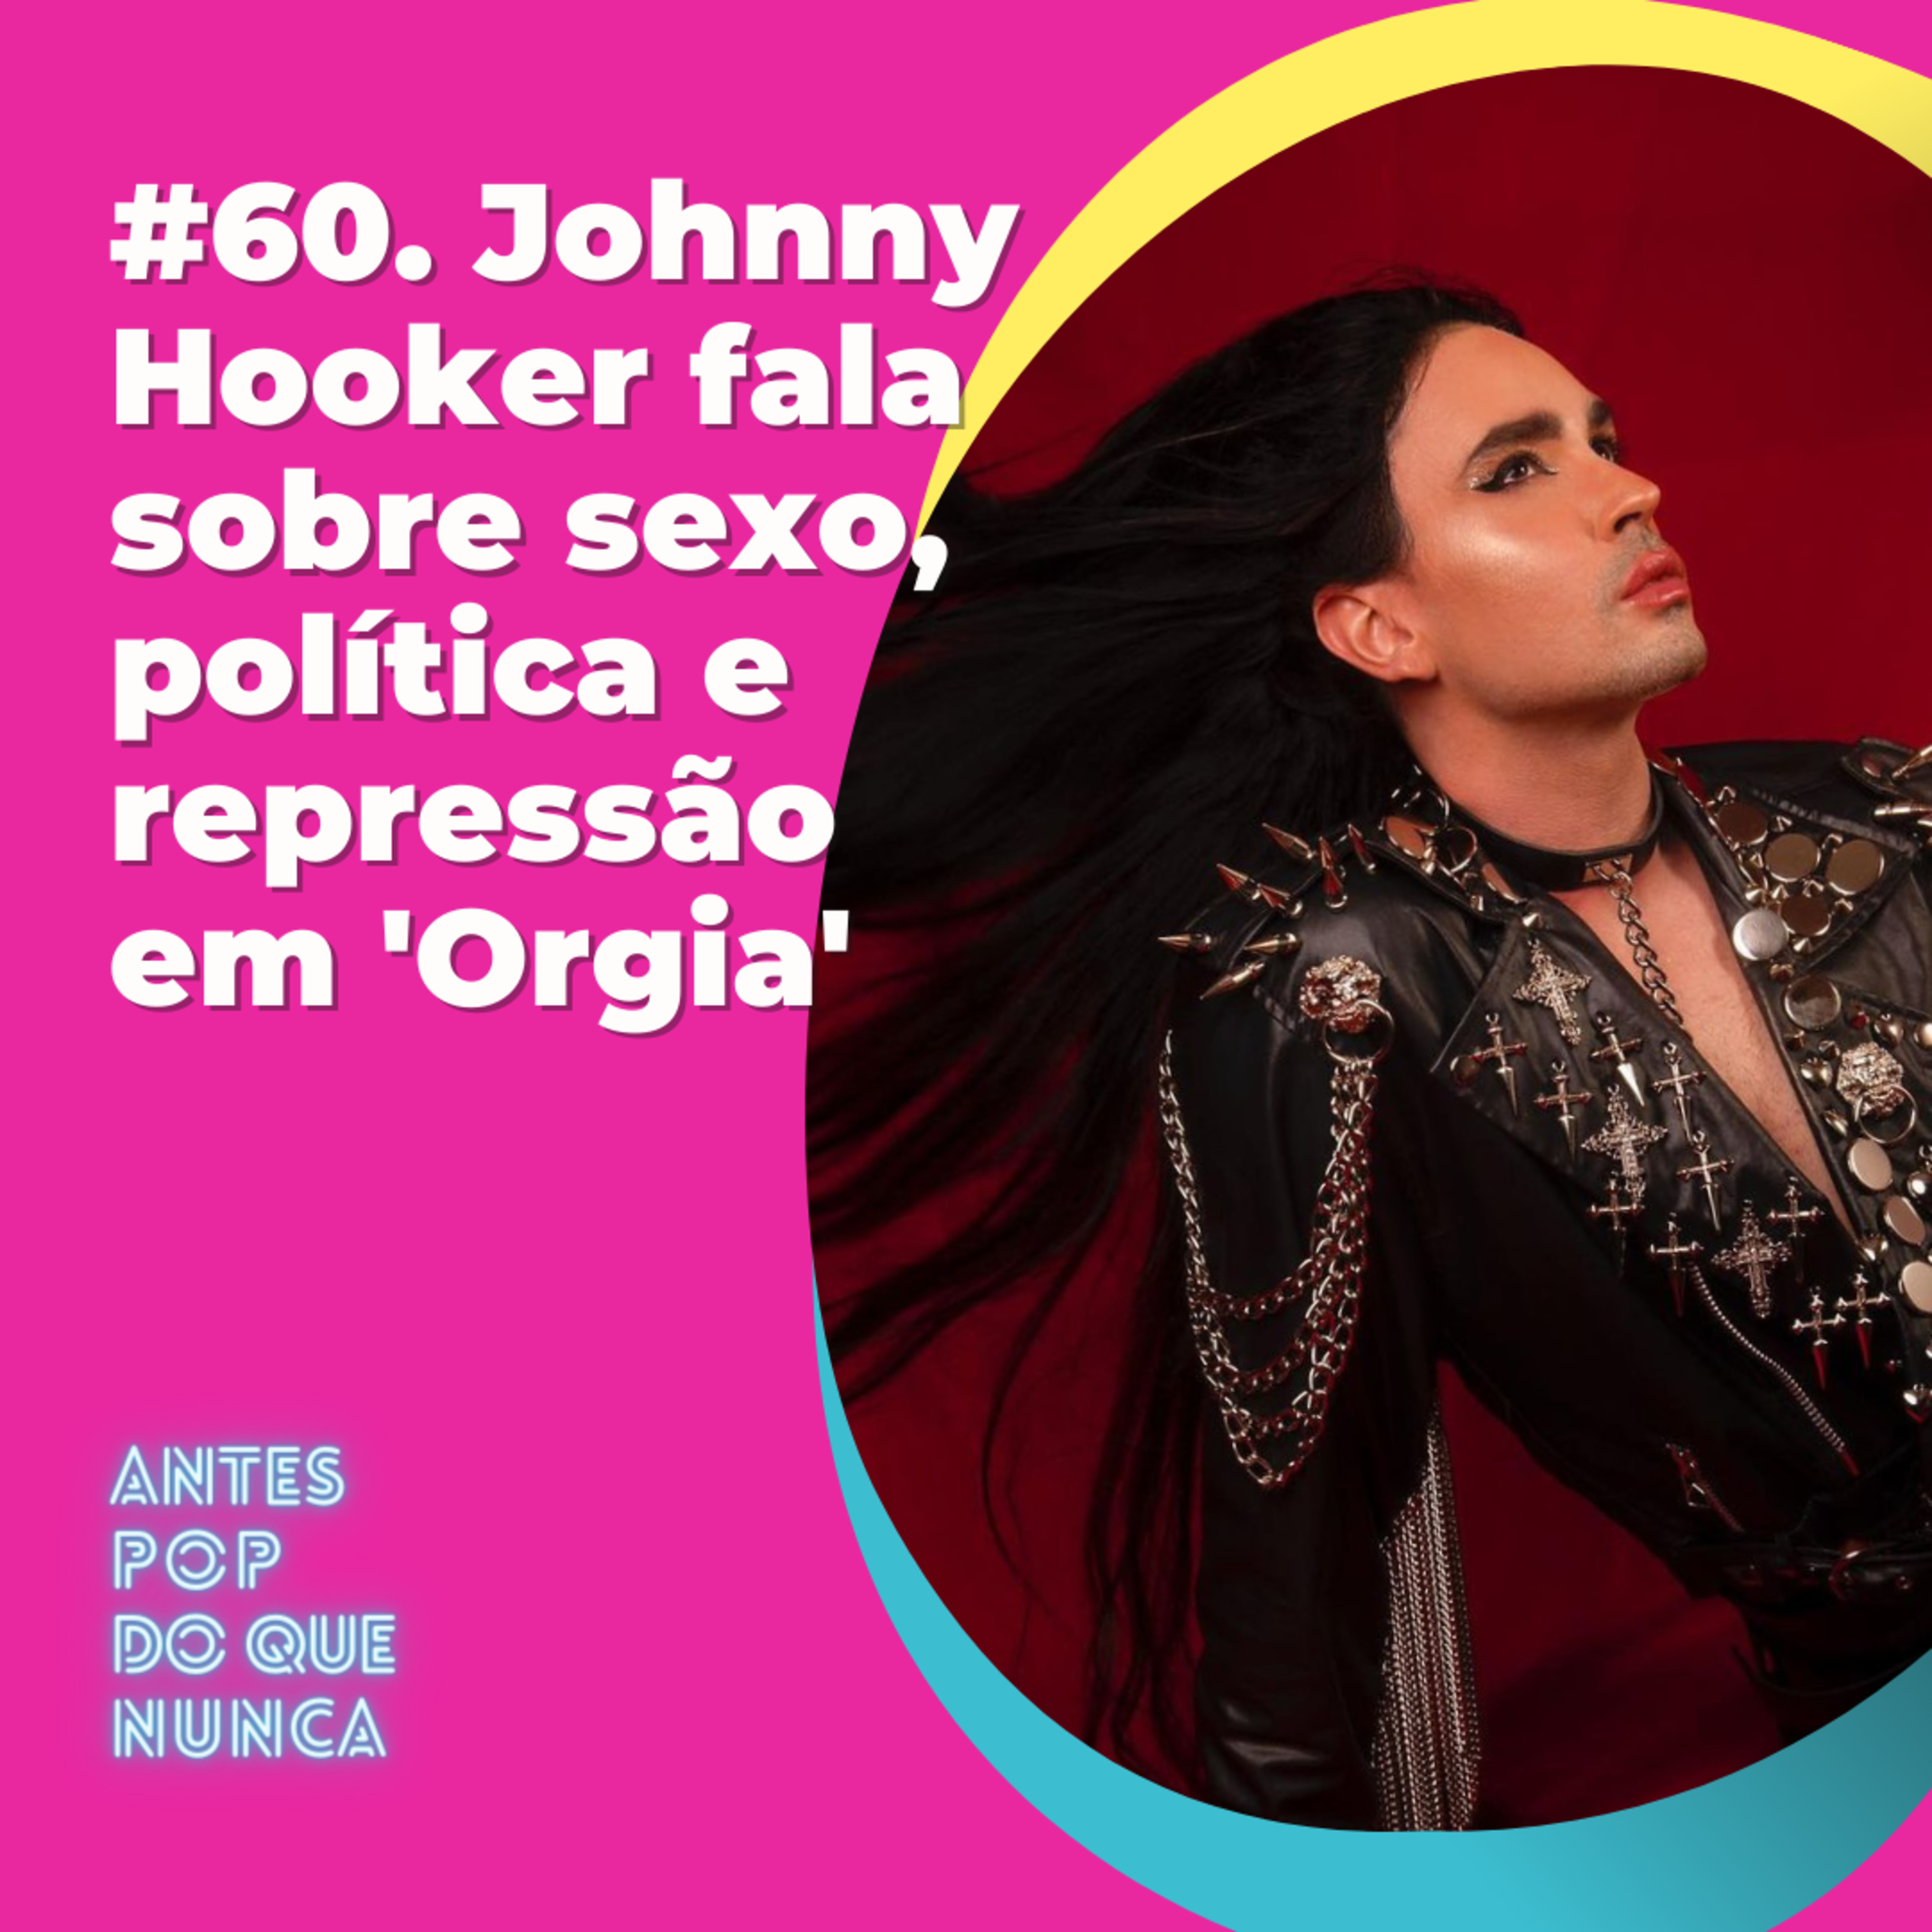 #60. Johnny Hooker fala sobre sexo, política e repressão em 'Orgia'